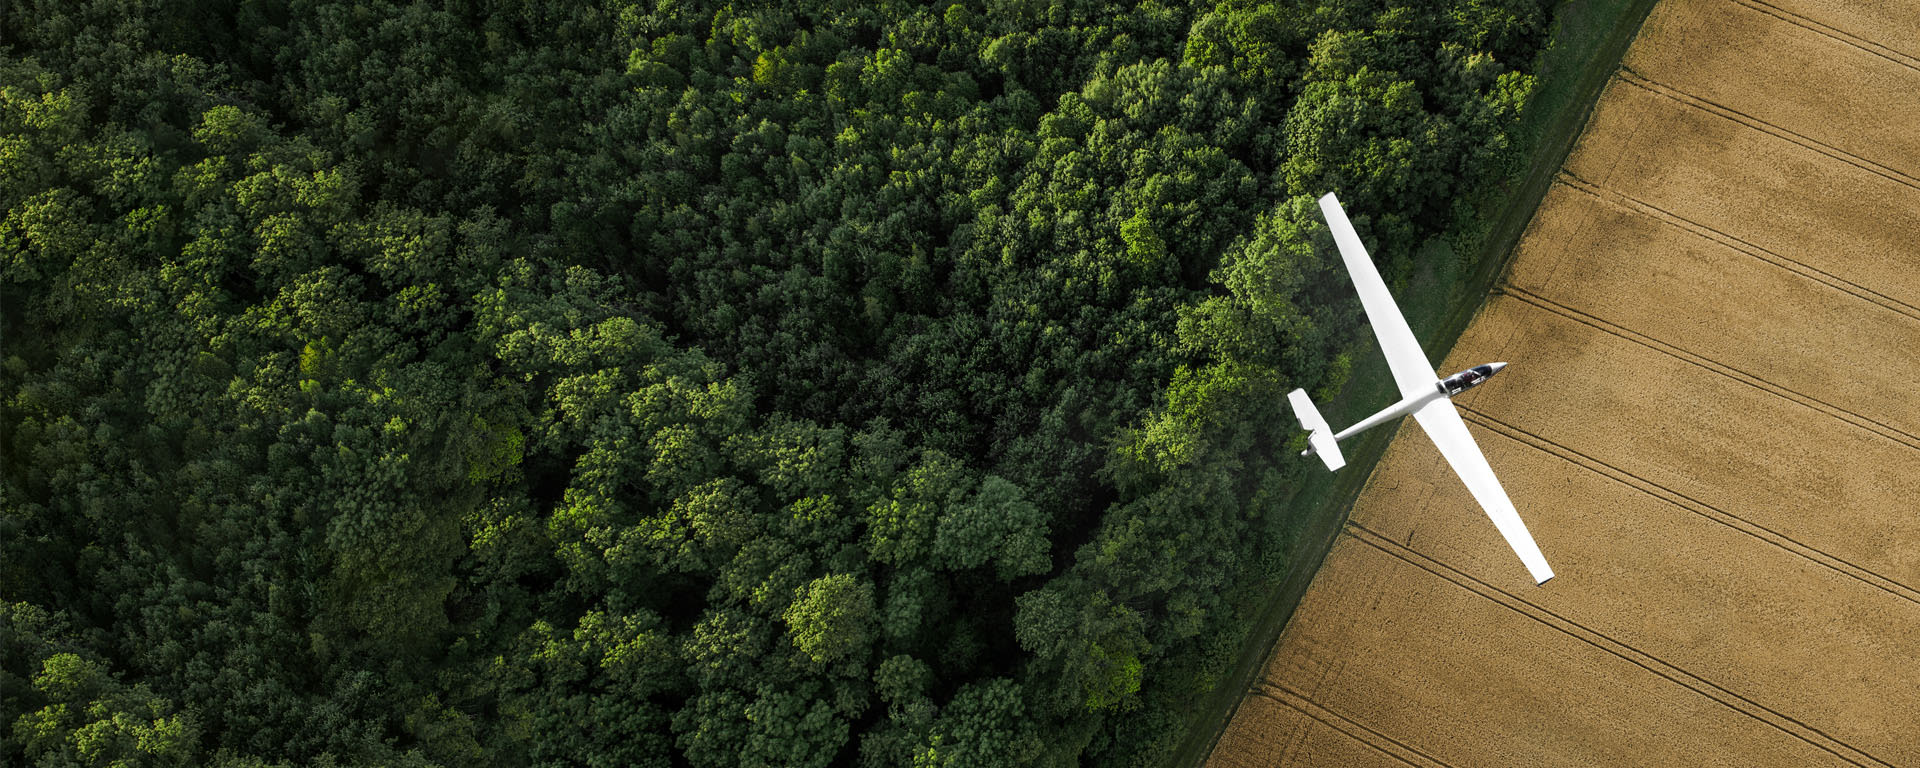 Private Markets bei Vontobel - Vogelperspektive eines Modellflugzeugs, welches über einen Wald fliegt